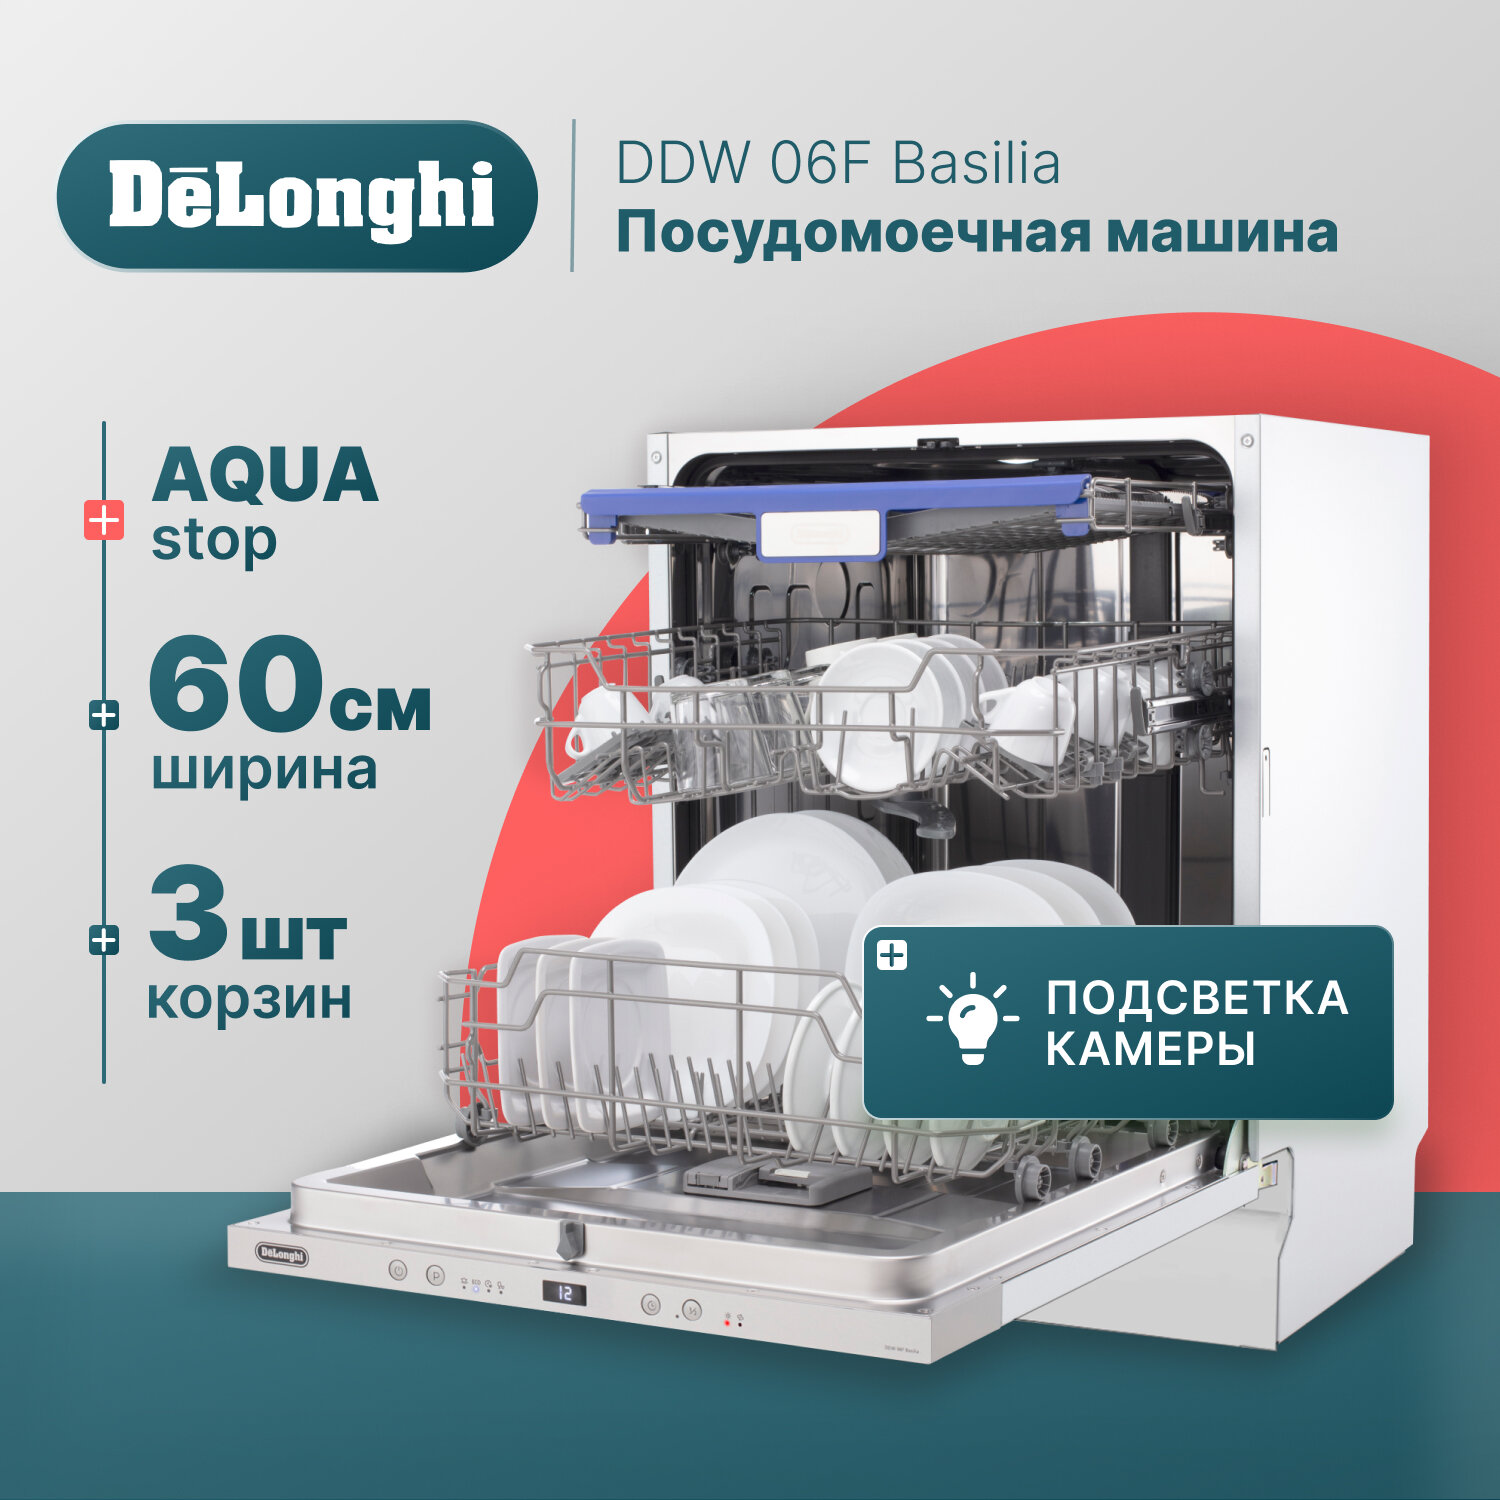 Встраиваемая посудомоечная машина DeLonghi DDW 06F Basilia, 60 см, 12 комплектов, Aqua Stop, 3 корзины, внутренняя LED-подсветка